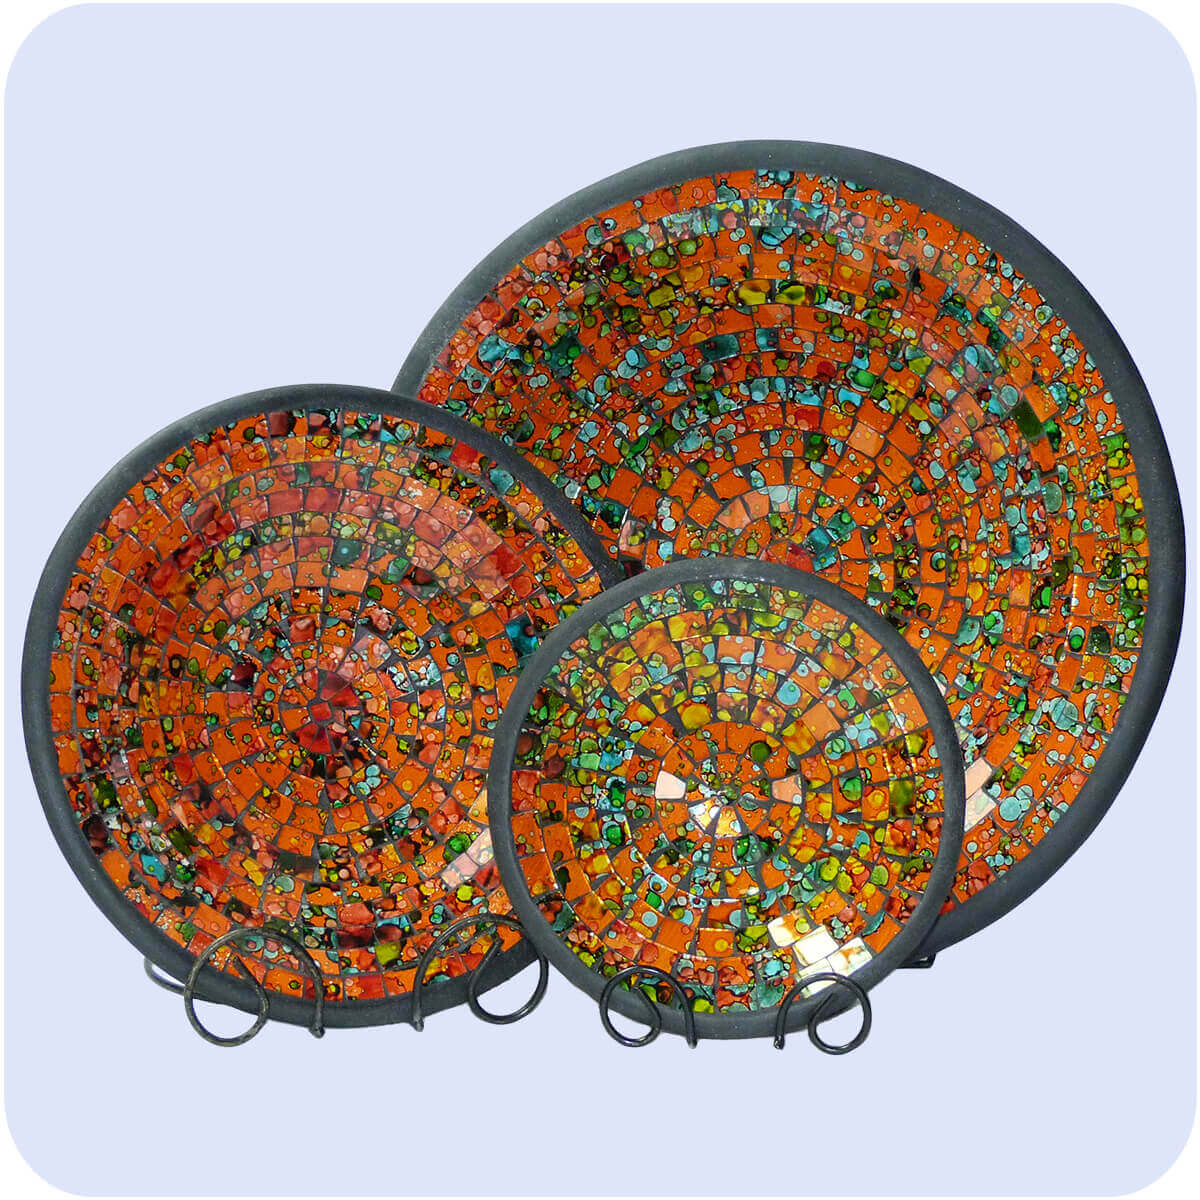 Simandra Mosaikschale Tonschale Glasschale Dekoschale Mosaik Kunsthandwerk Glassteine Deko rund Spiegel M Color Orange